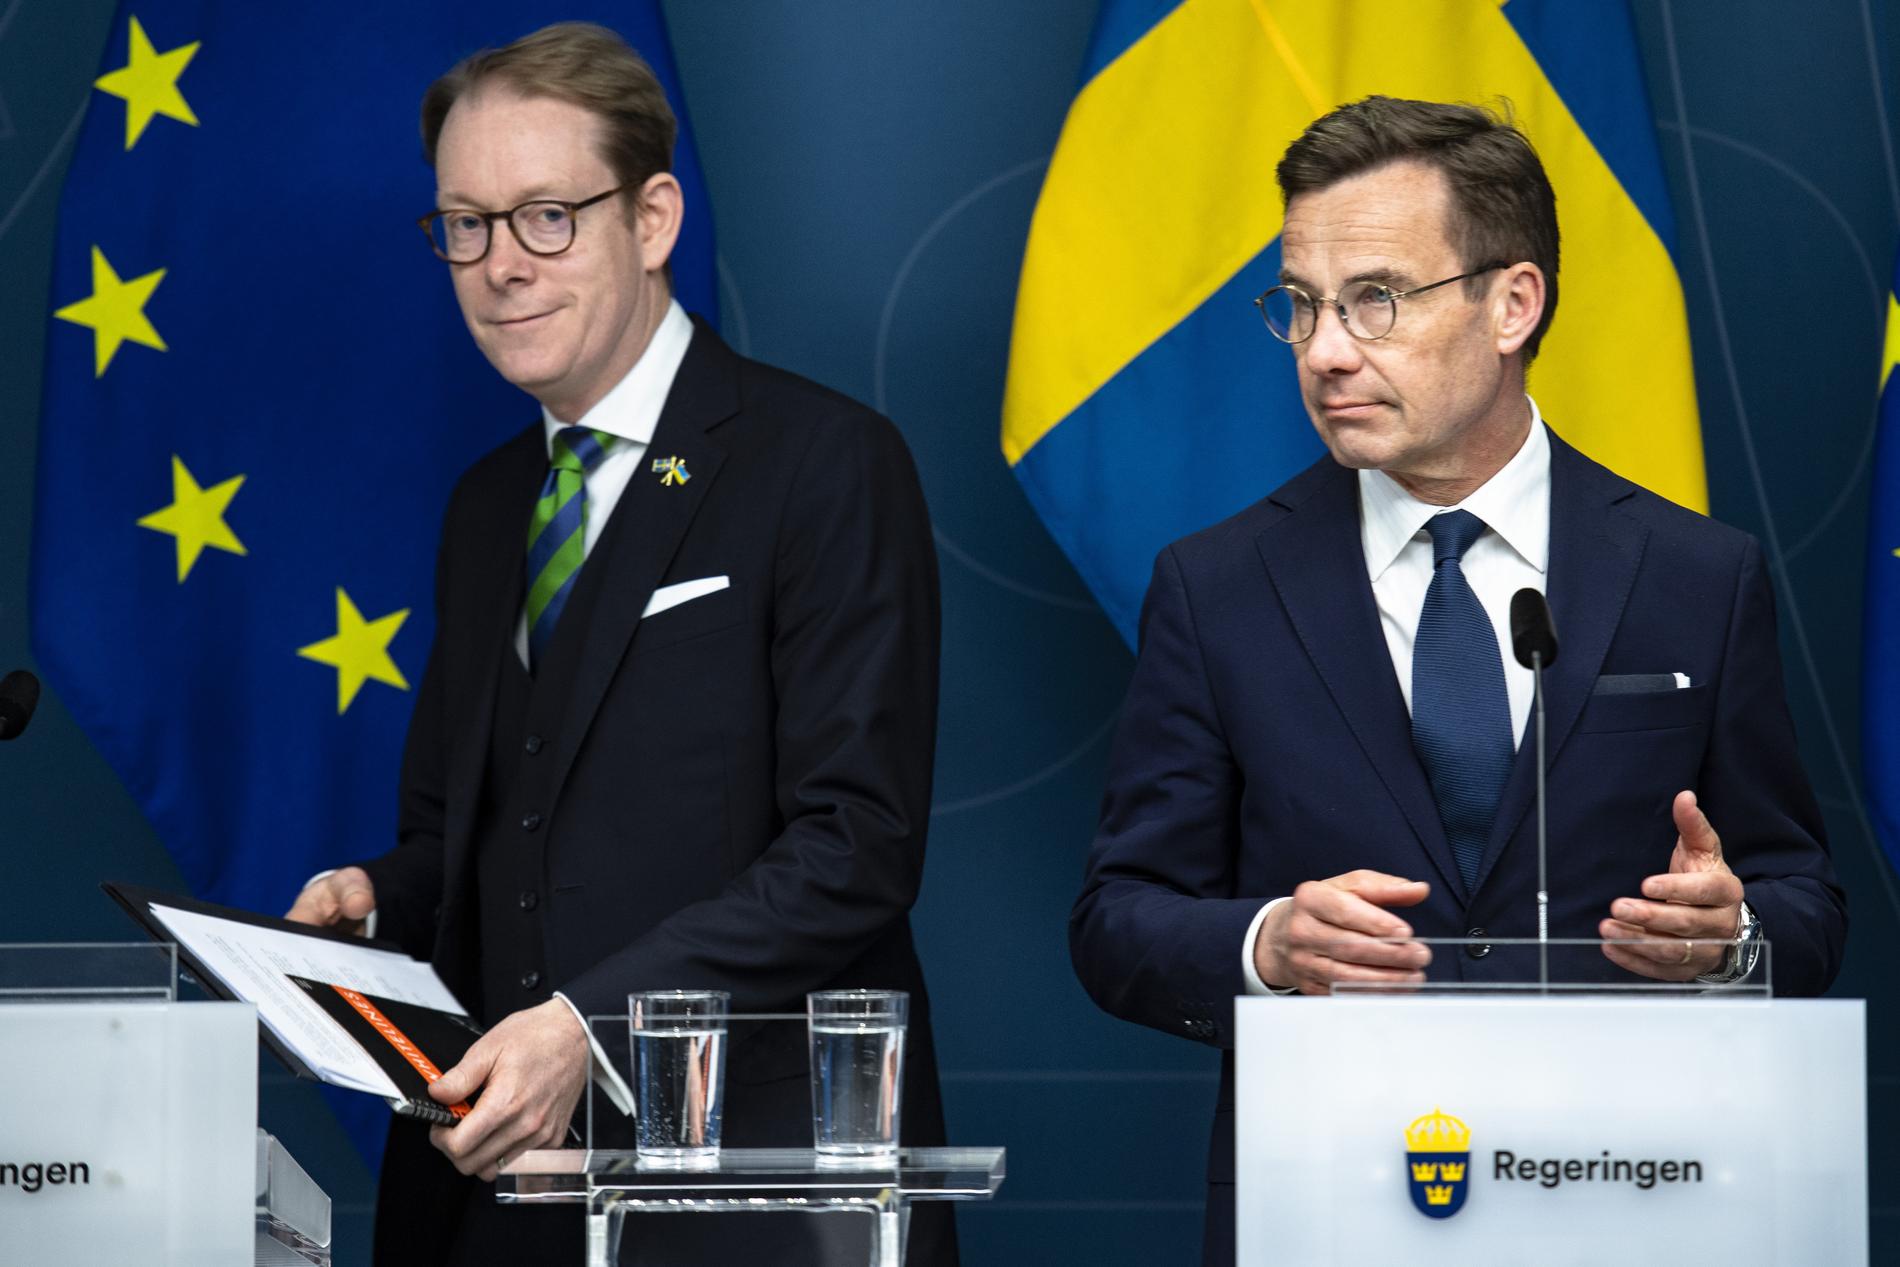 Utrikesminister Tobias Billström och statsminister Ulf Kristersson.